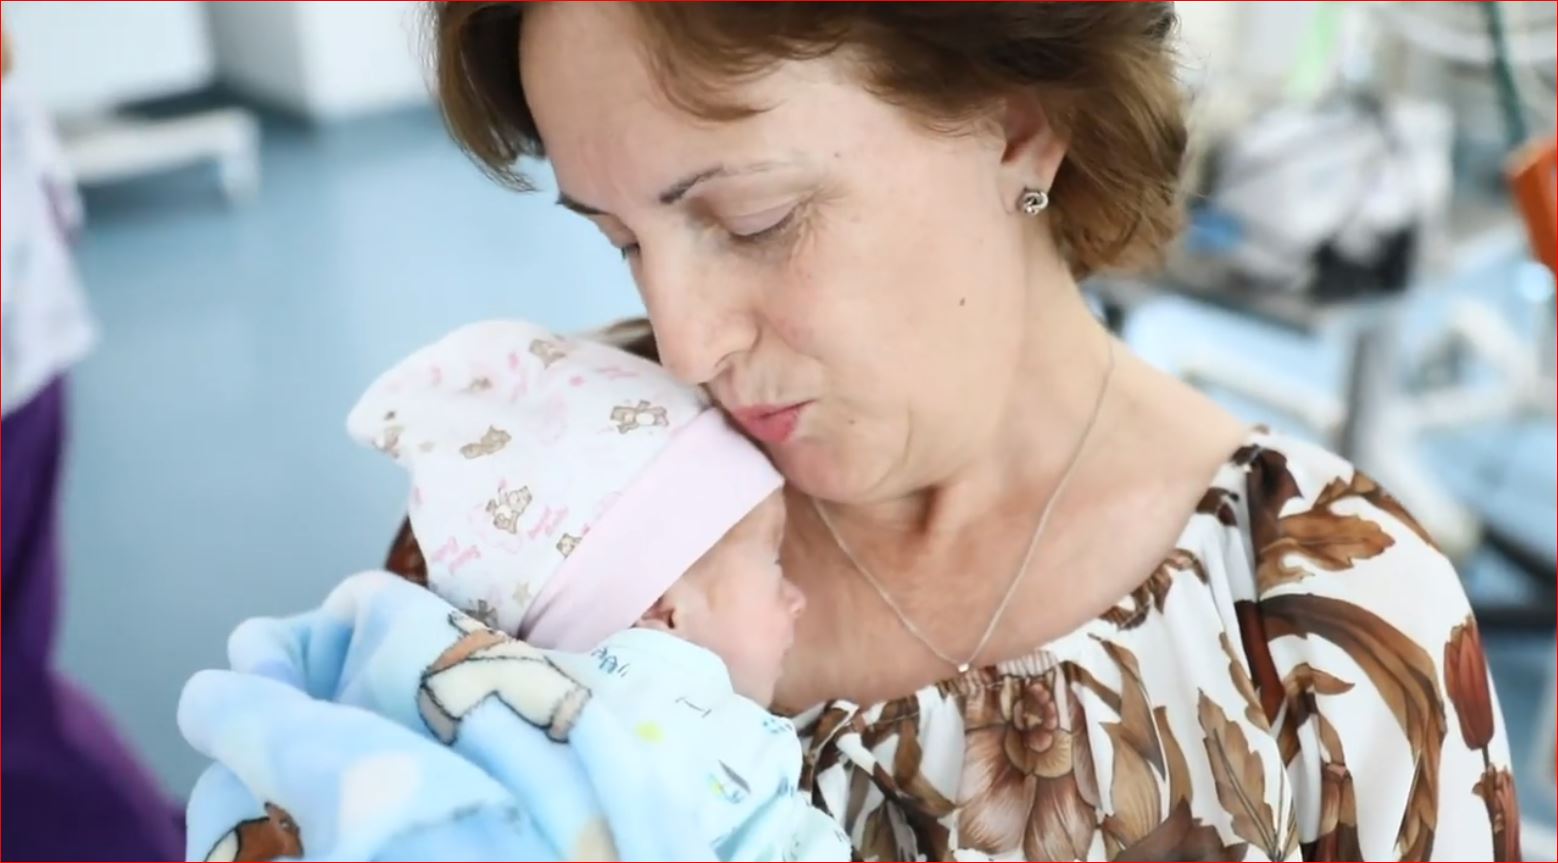 Emocionuese, 52-vjeçarja nga Prishtina bëhet nënë për herë të parë: Jam shumë e lumtur